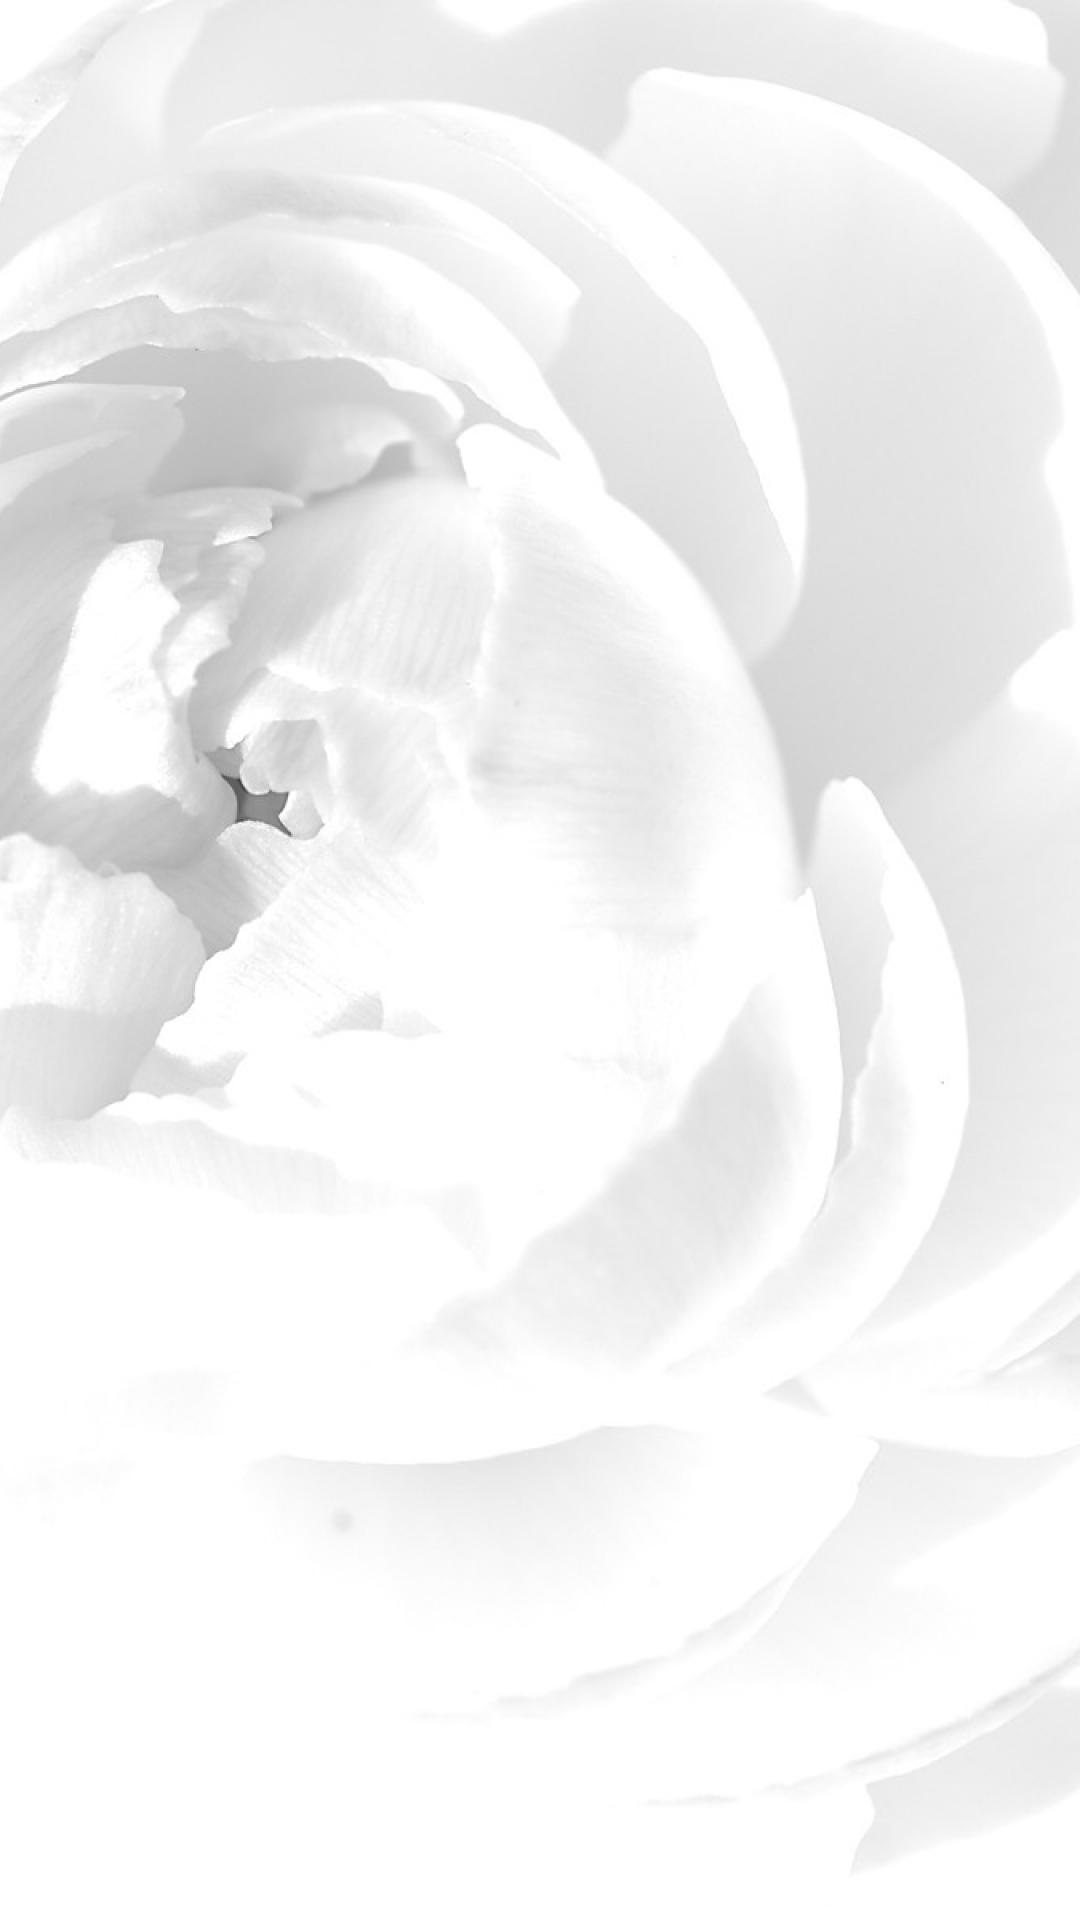 화이트 아이폰 배경 화면,하얀,꽃잎,검정색과 흰색,흑백 사진,꽃